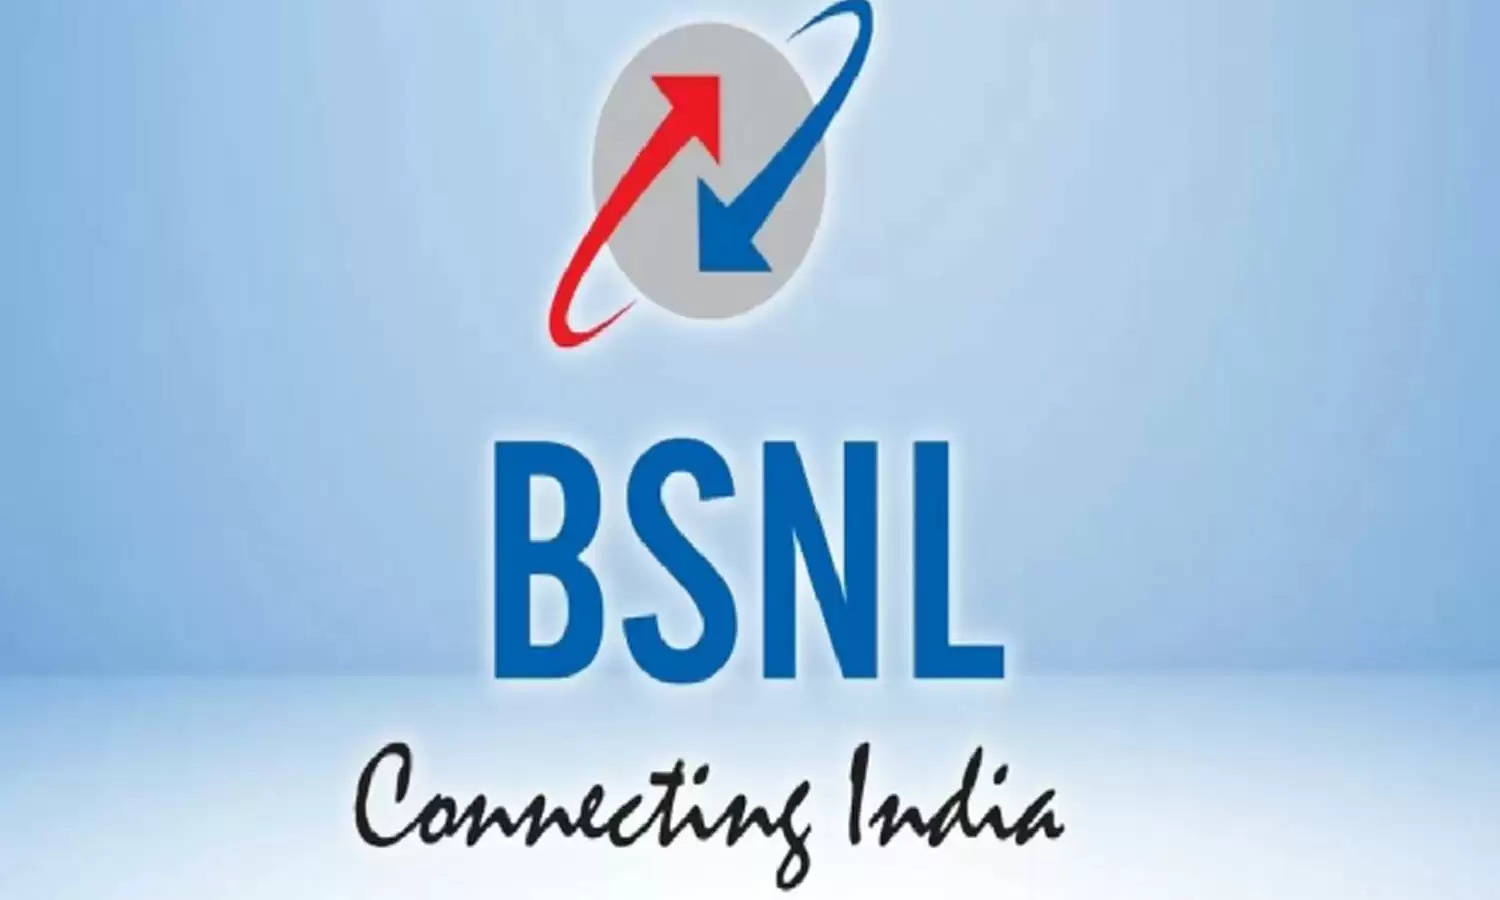 BSNL का सबसे धांसू प्रीपेड प्लान मचा रहा गदर, 2 रुपये खर्च कर 100 दिन तक मिल रहे छप्परफाड़ फायदें